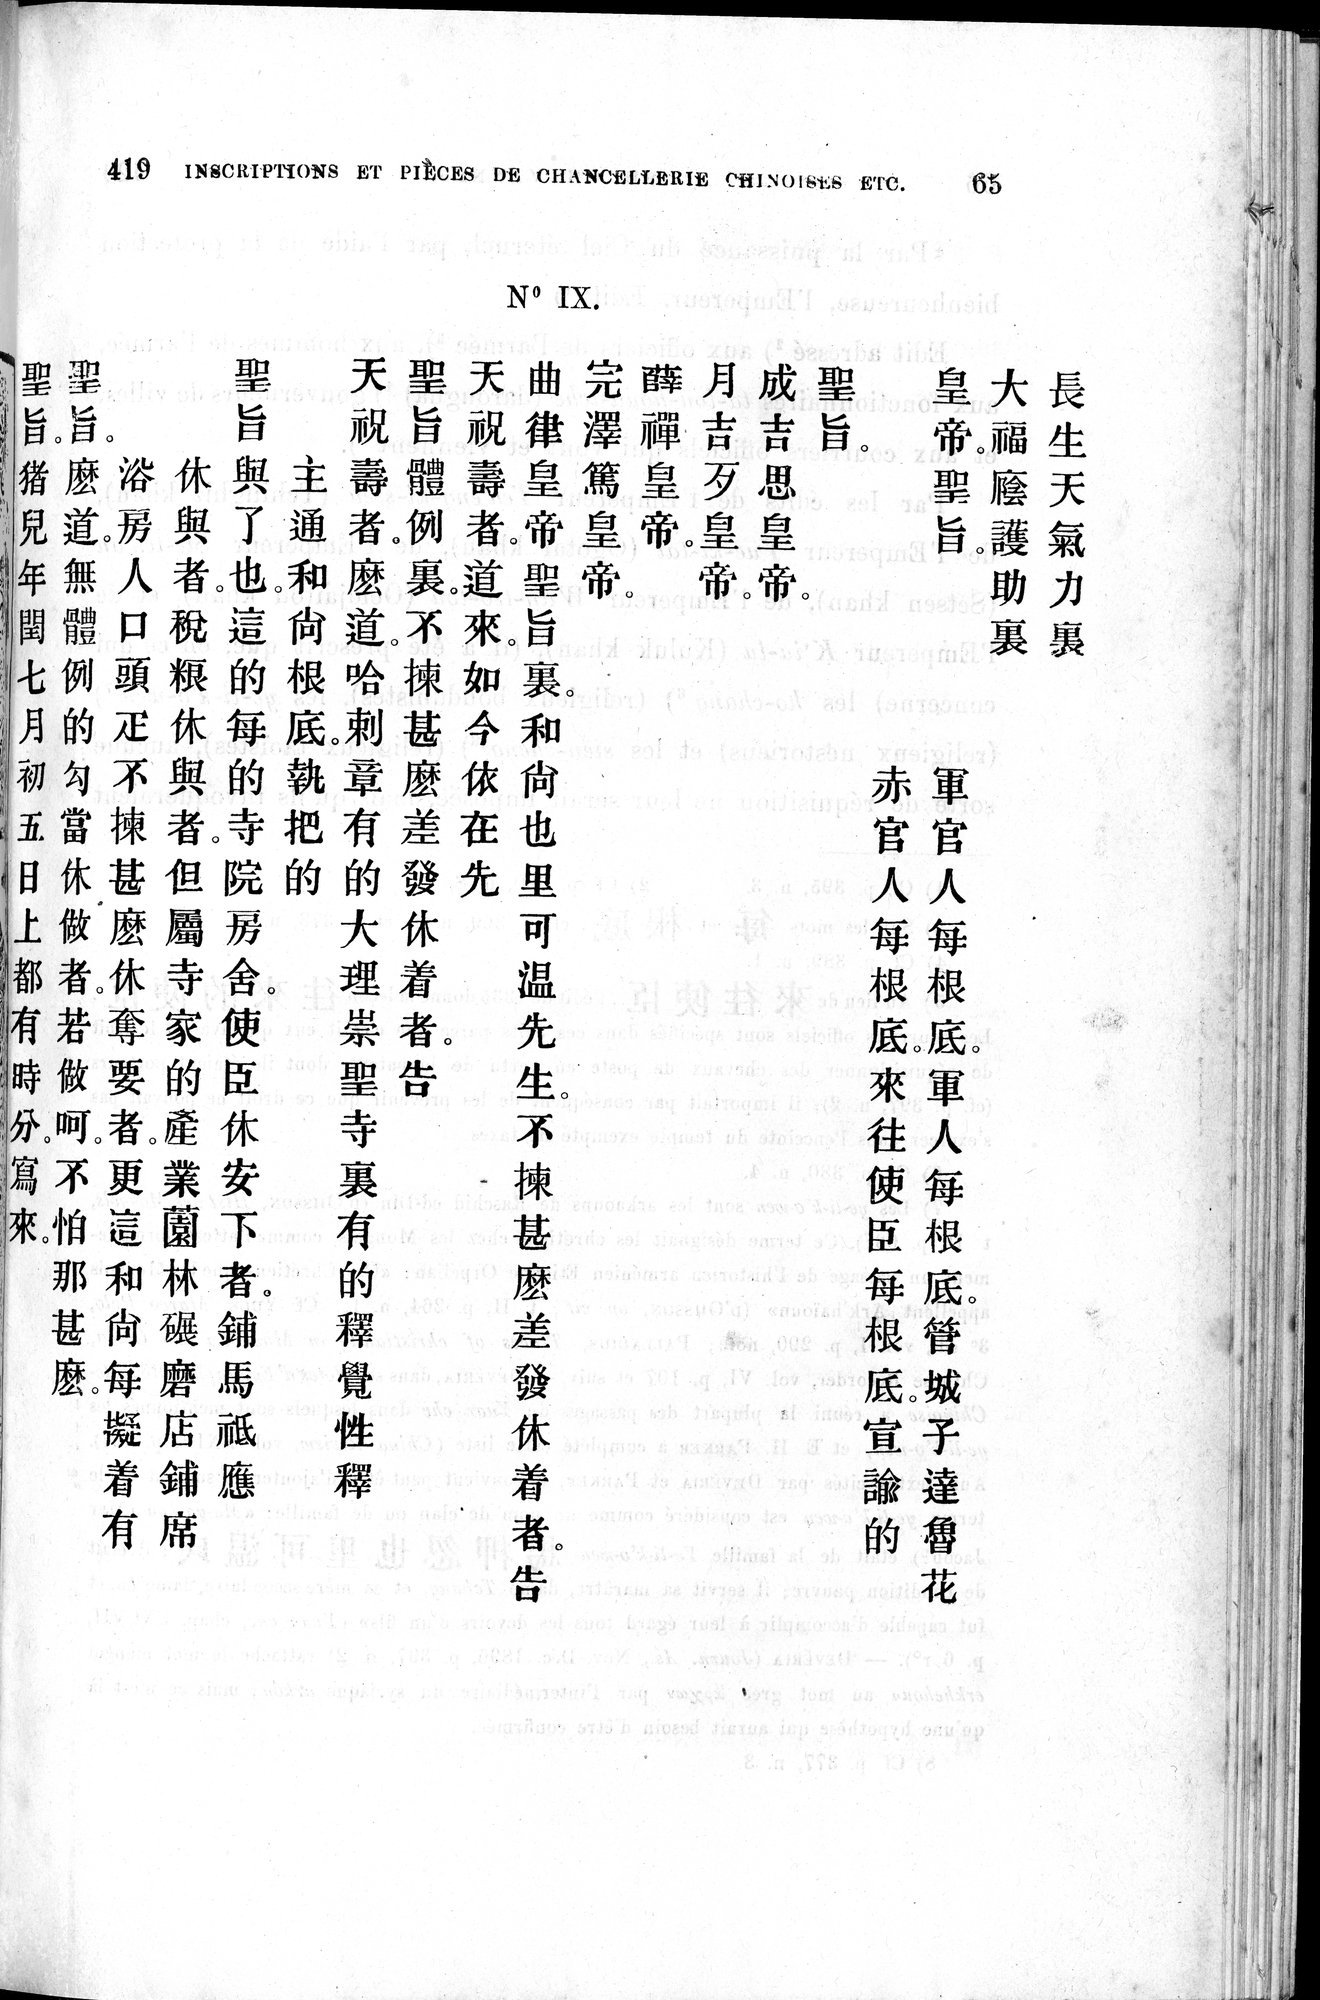 Inscriptions et pièces de Chancellerie Chinoises de l'époque mongol : vol.1 / Page 77 (Grayscale High Resolution Image)